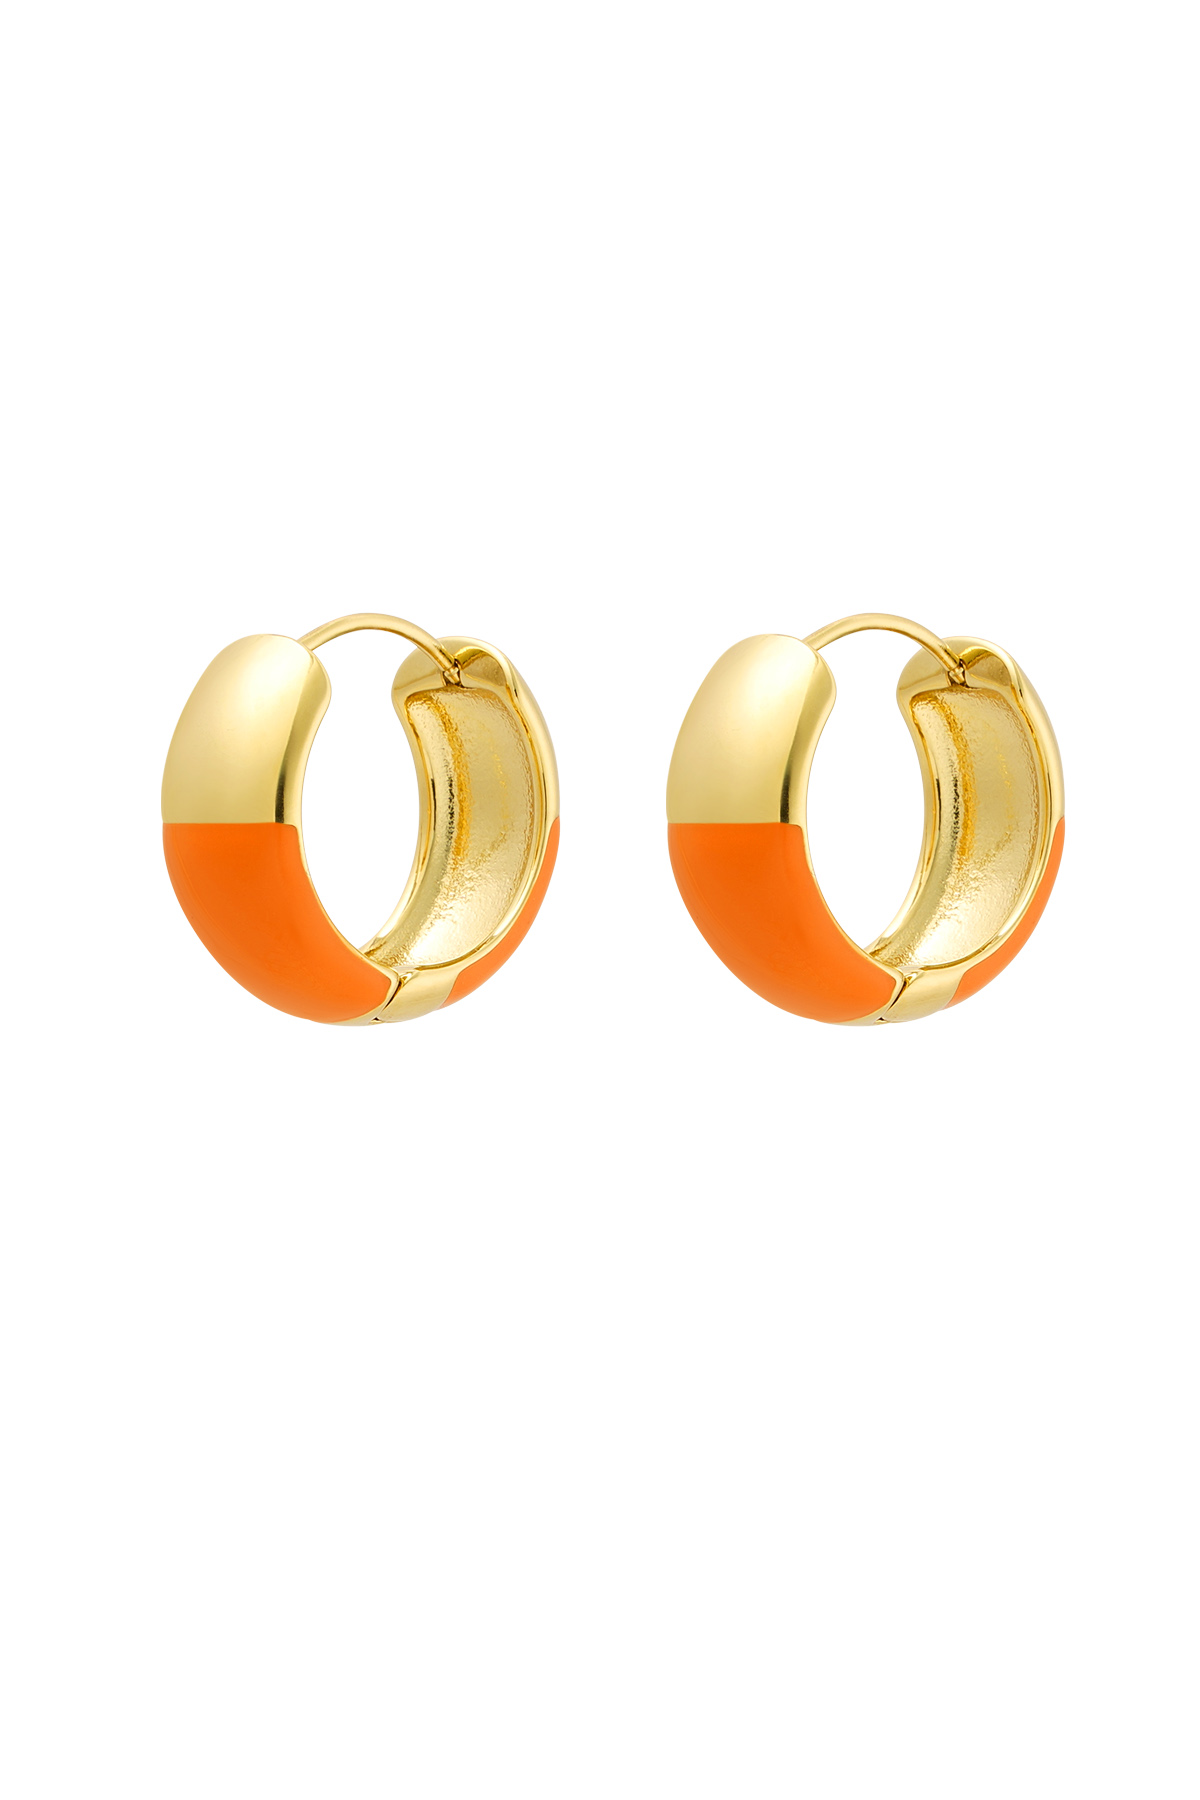 Oorbellen half gekleurd - Oranje & Goud Stainless Steel 